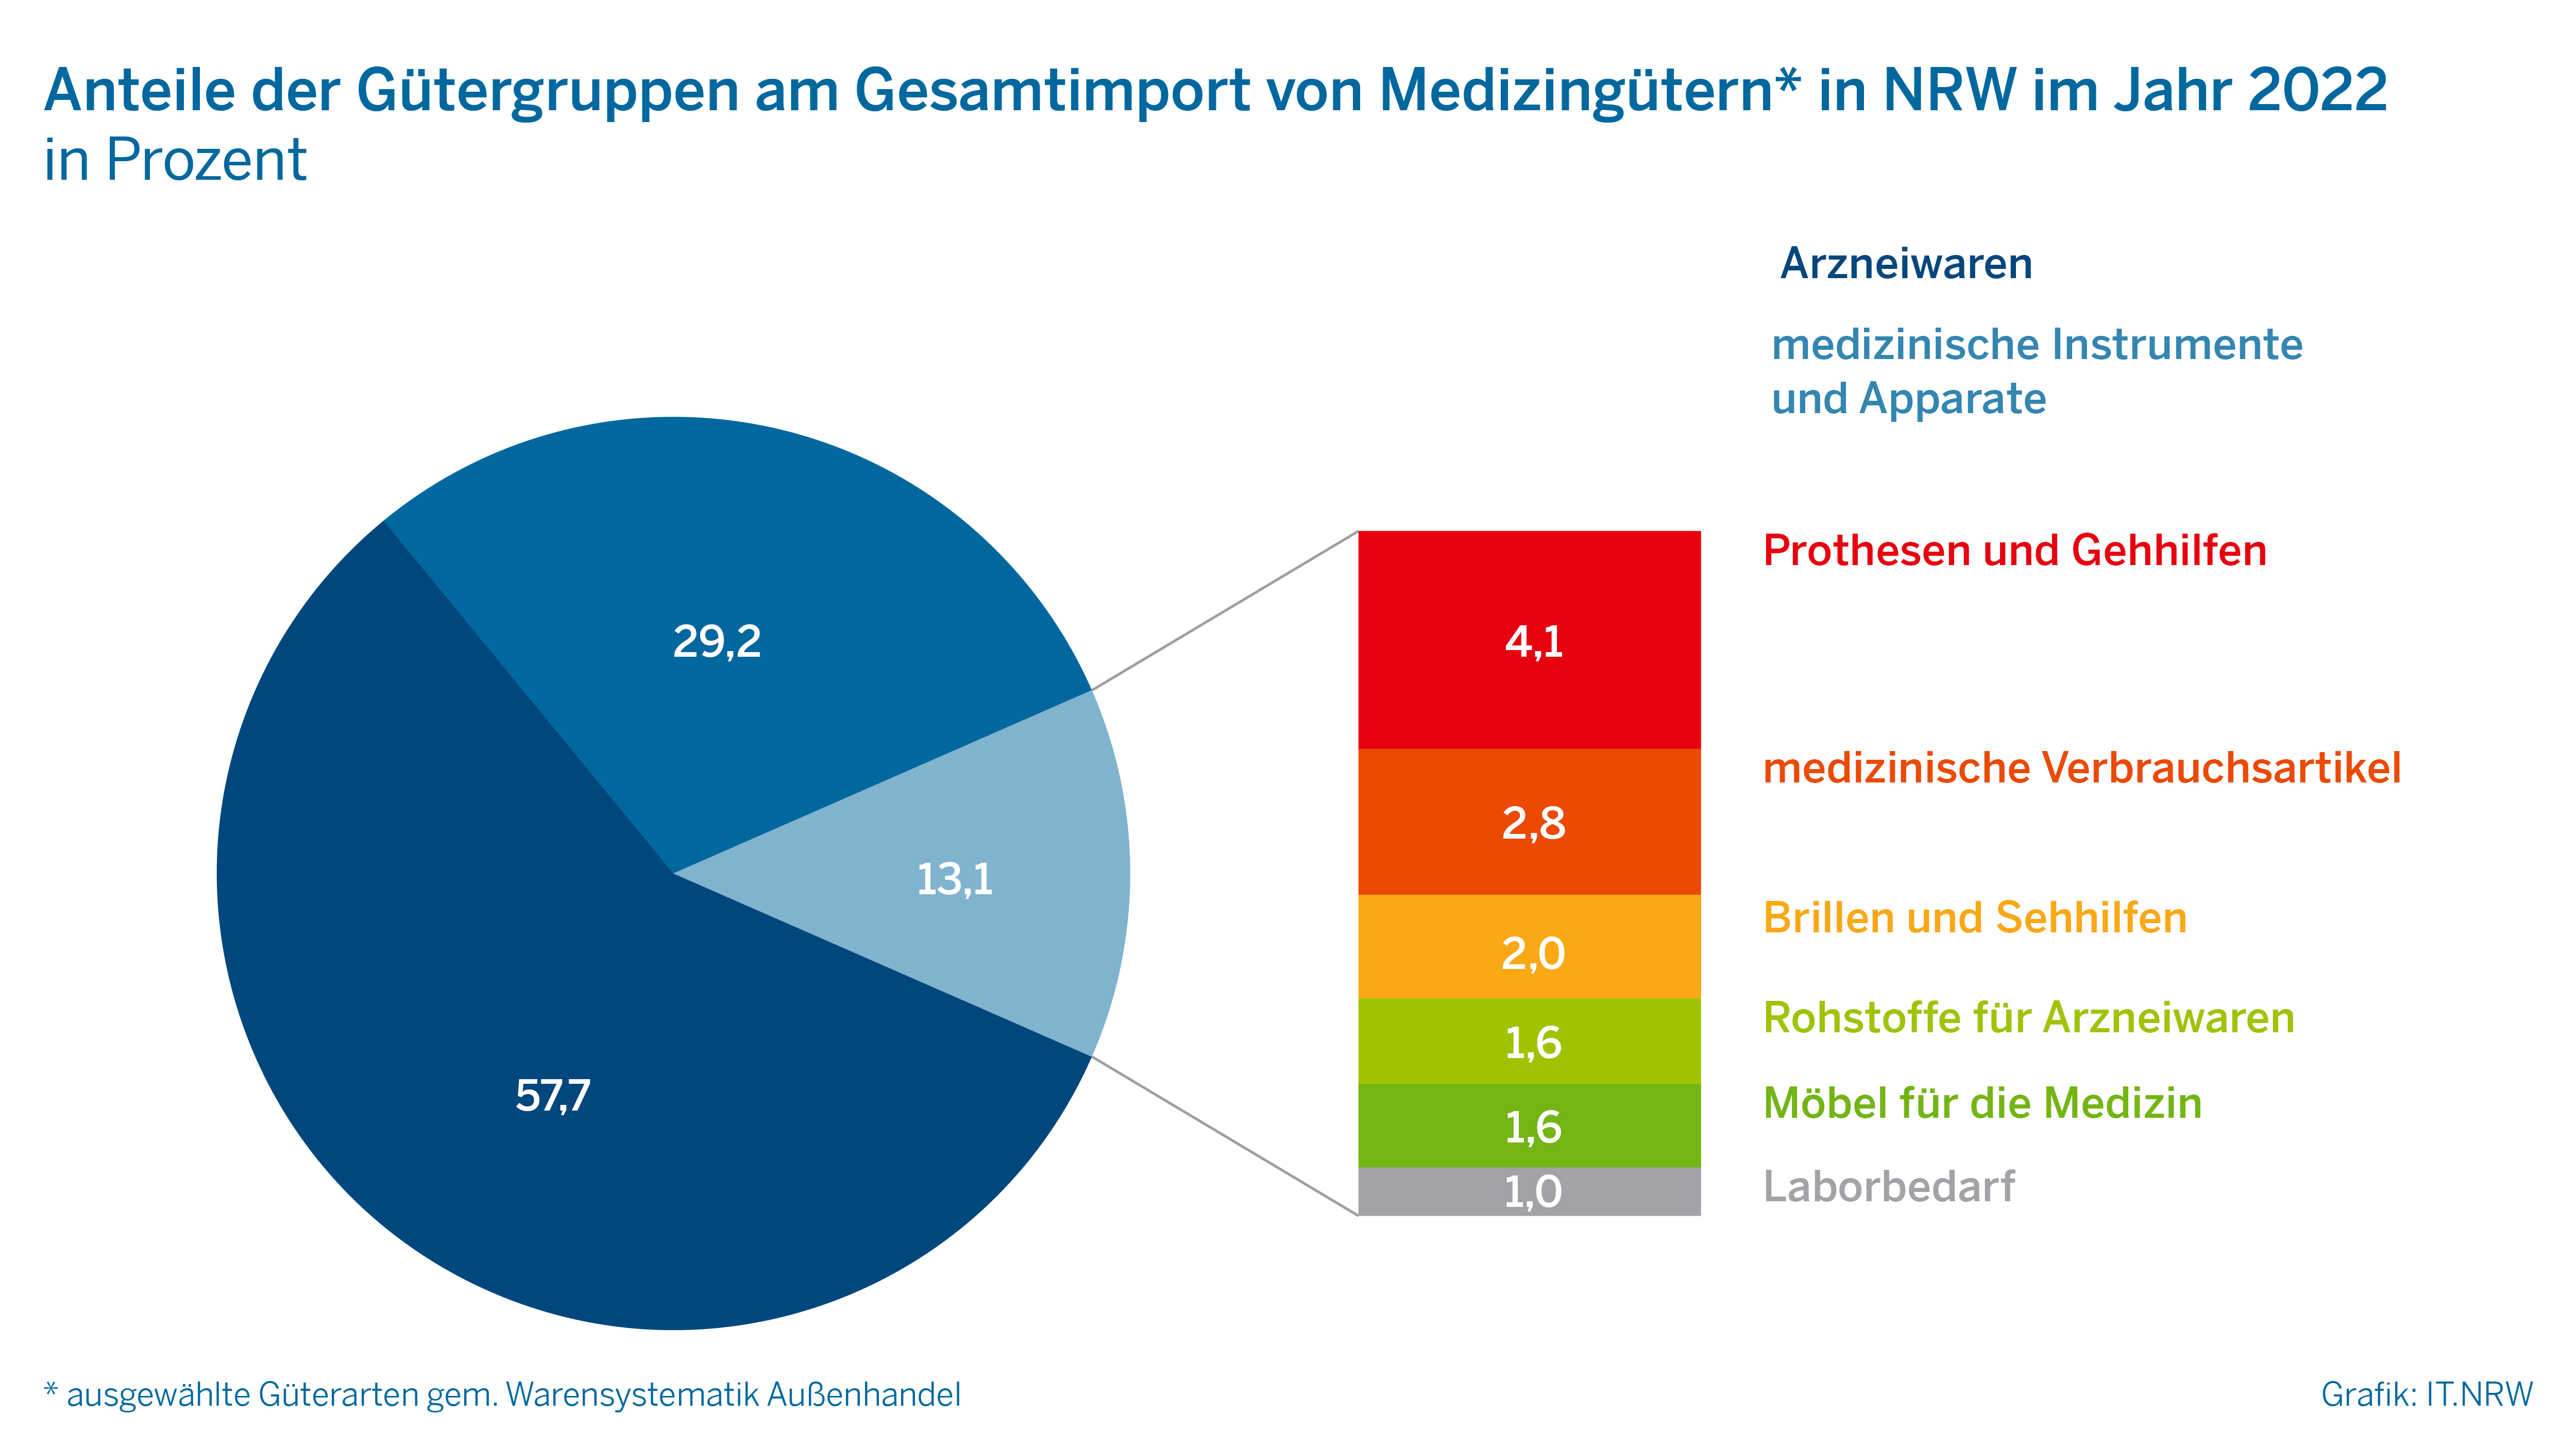 Anteile der Gütergruppen am Gesamtimport von Medizingütern in NRW im Jahr 2022